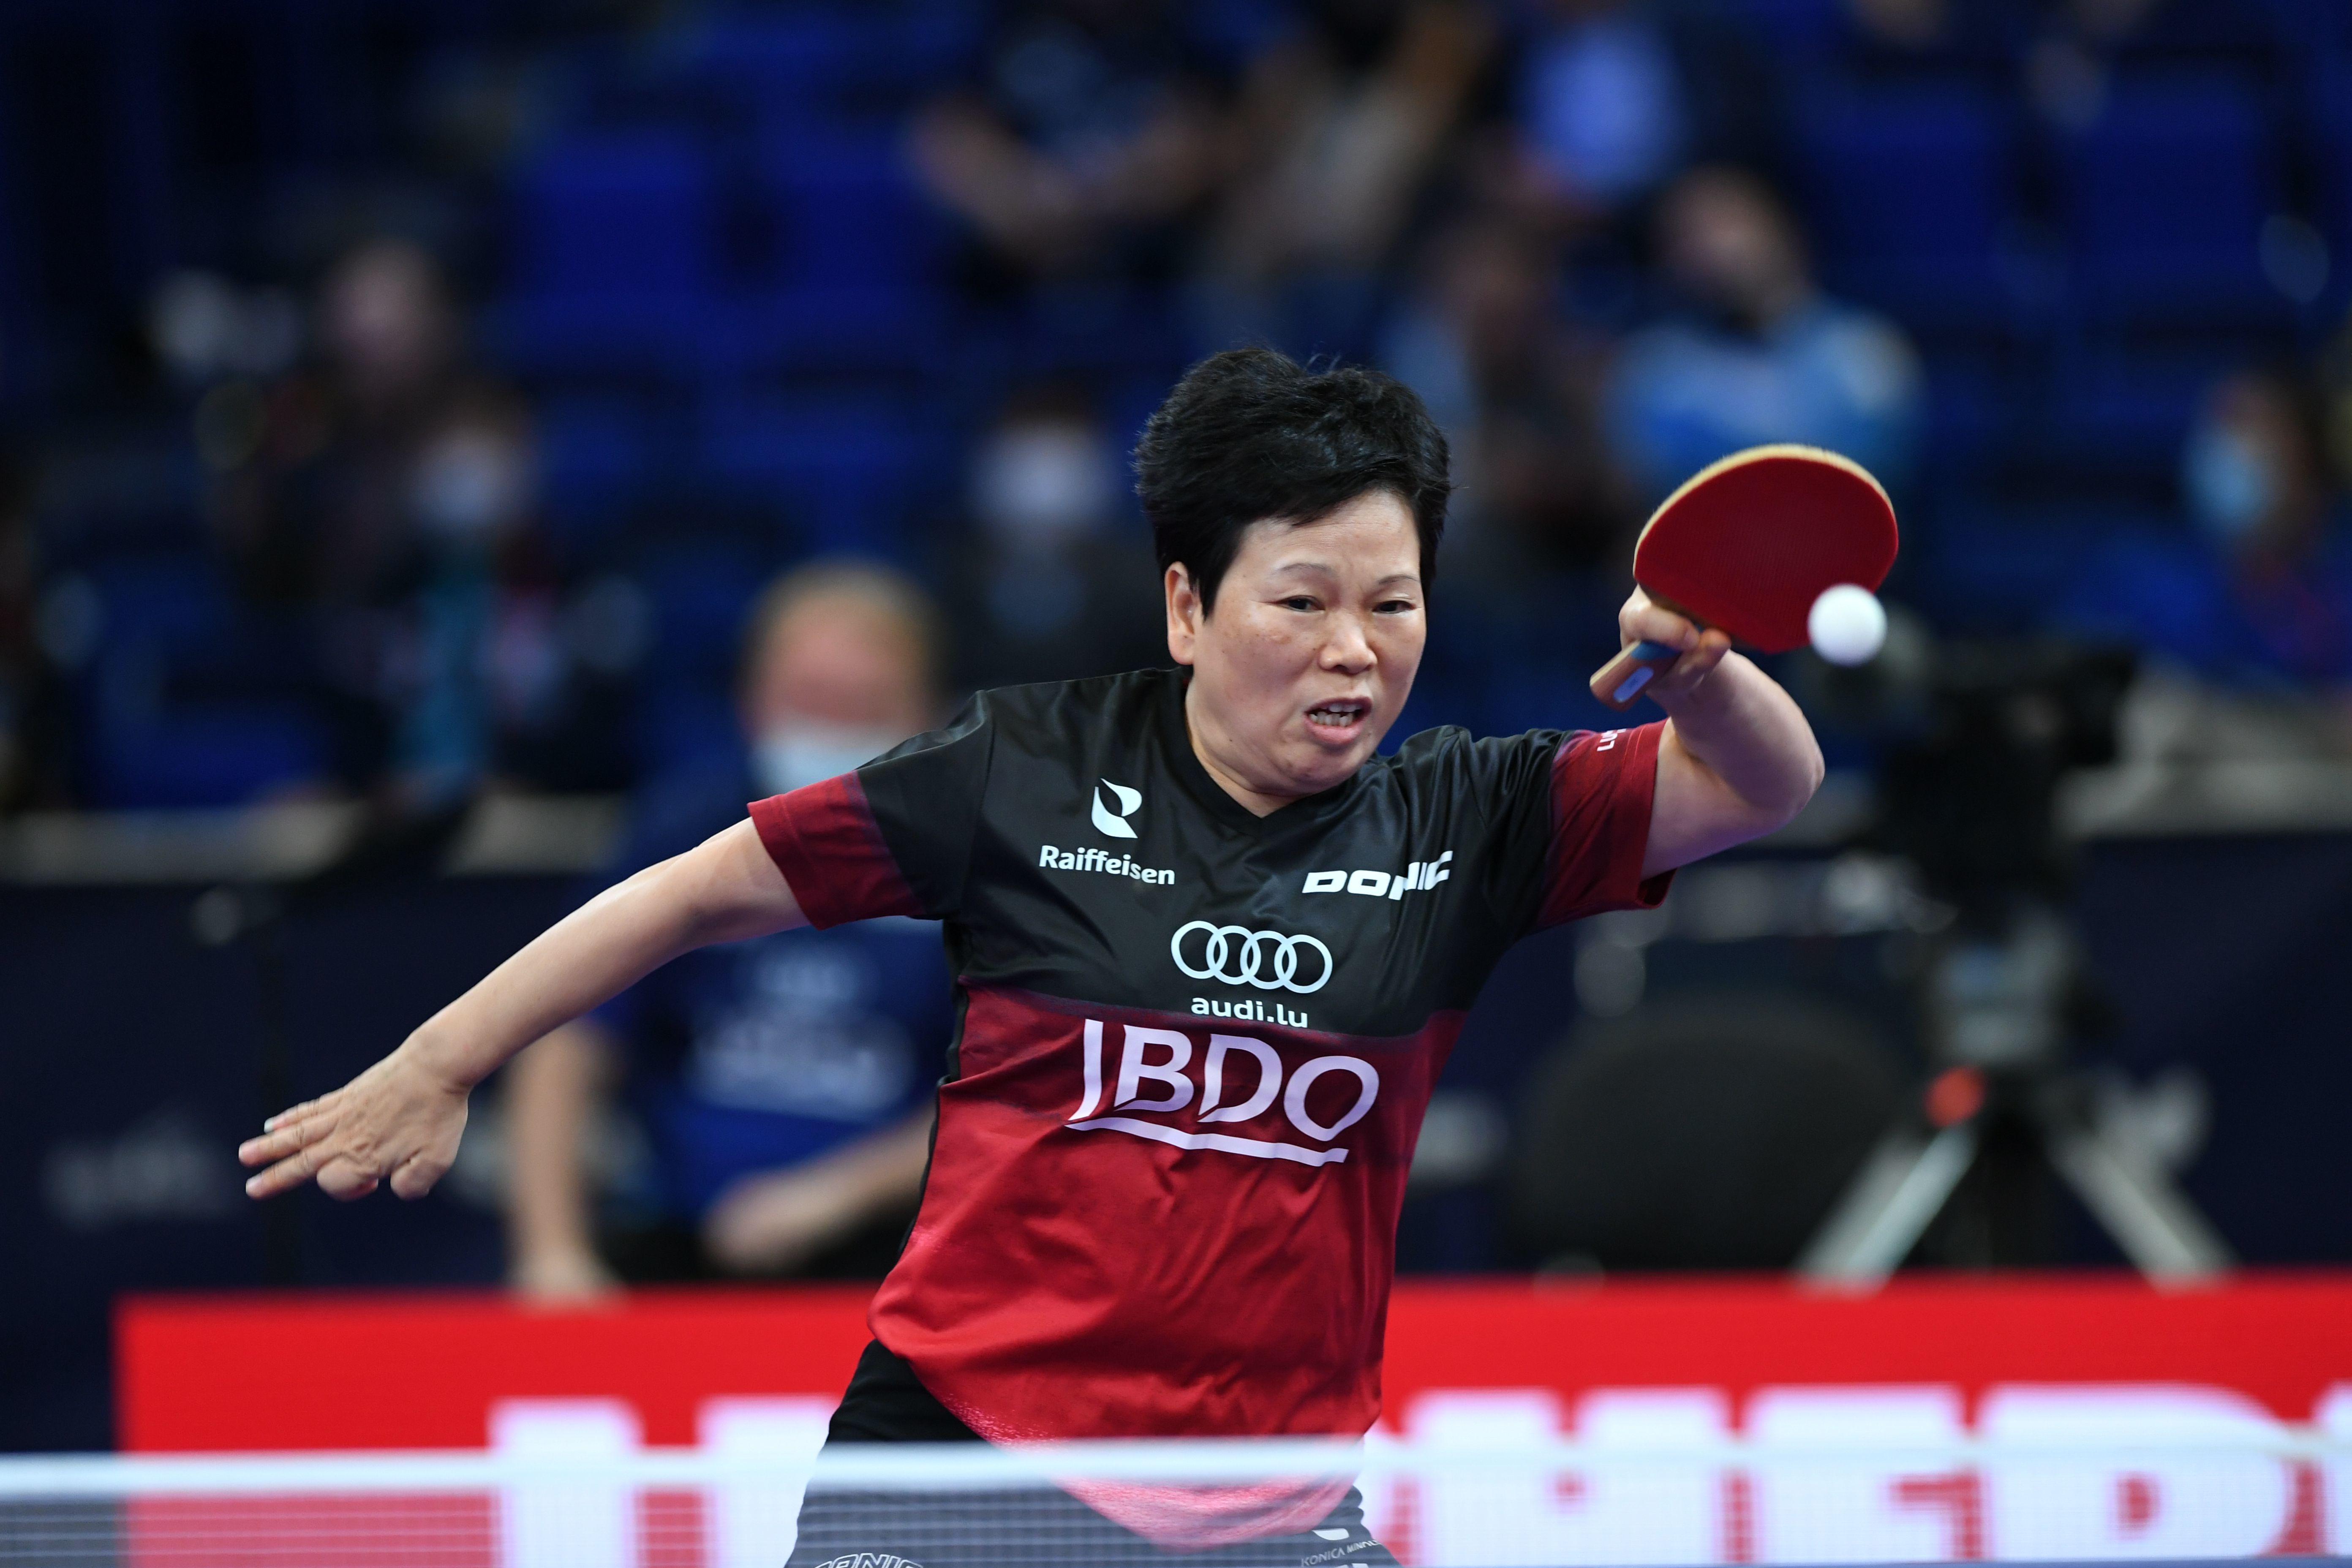 2021年11月25日，在美国休斯敦进行的2021世界乒乓球锦标赛女子单打第三轮比赛，倪夏莲在比赛中回球。新华社记者 吴晓凌 摄